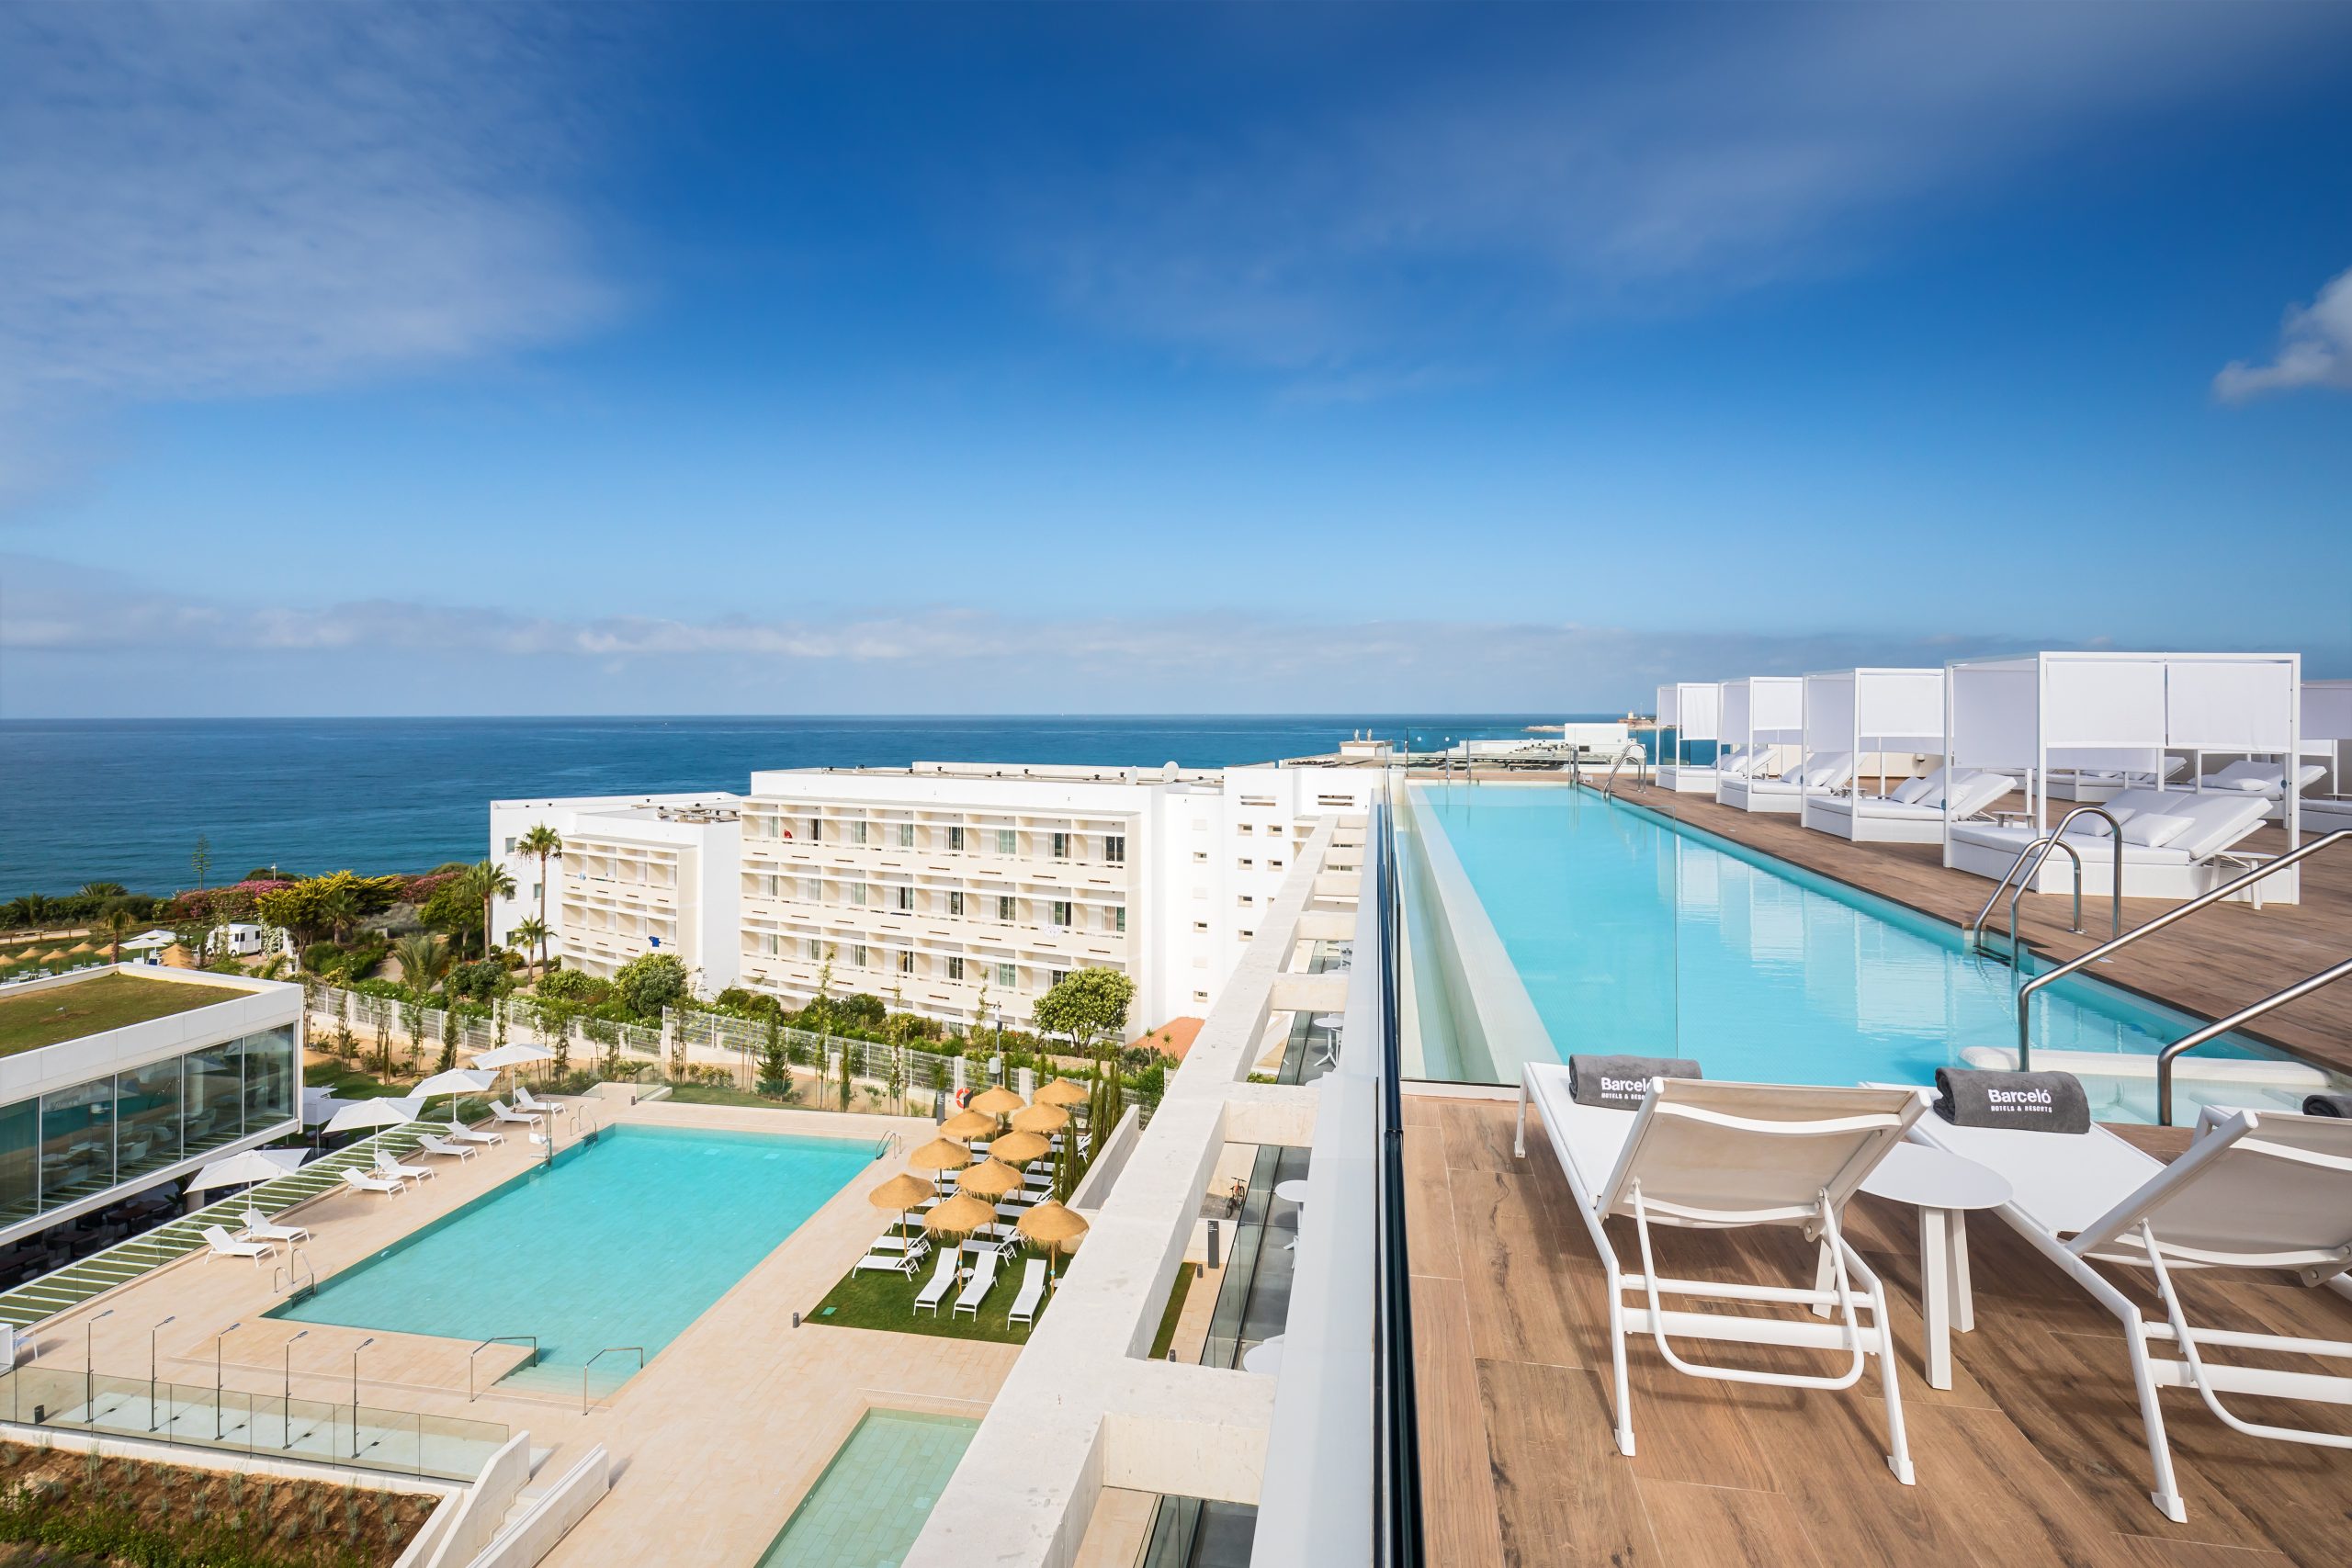 84 hoteles de Barceló Hotel Group, entre los mejores valorados del mundo, según TripAdvisor